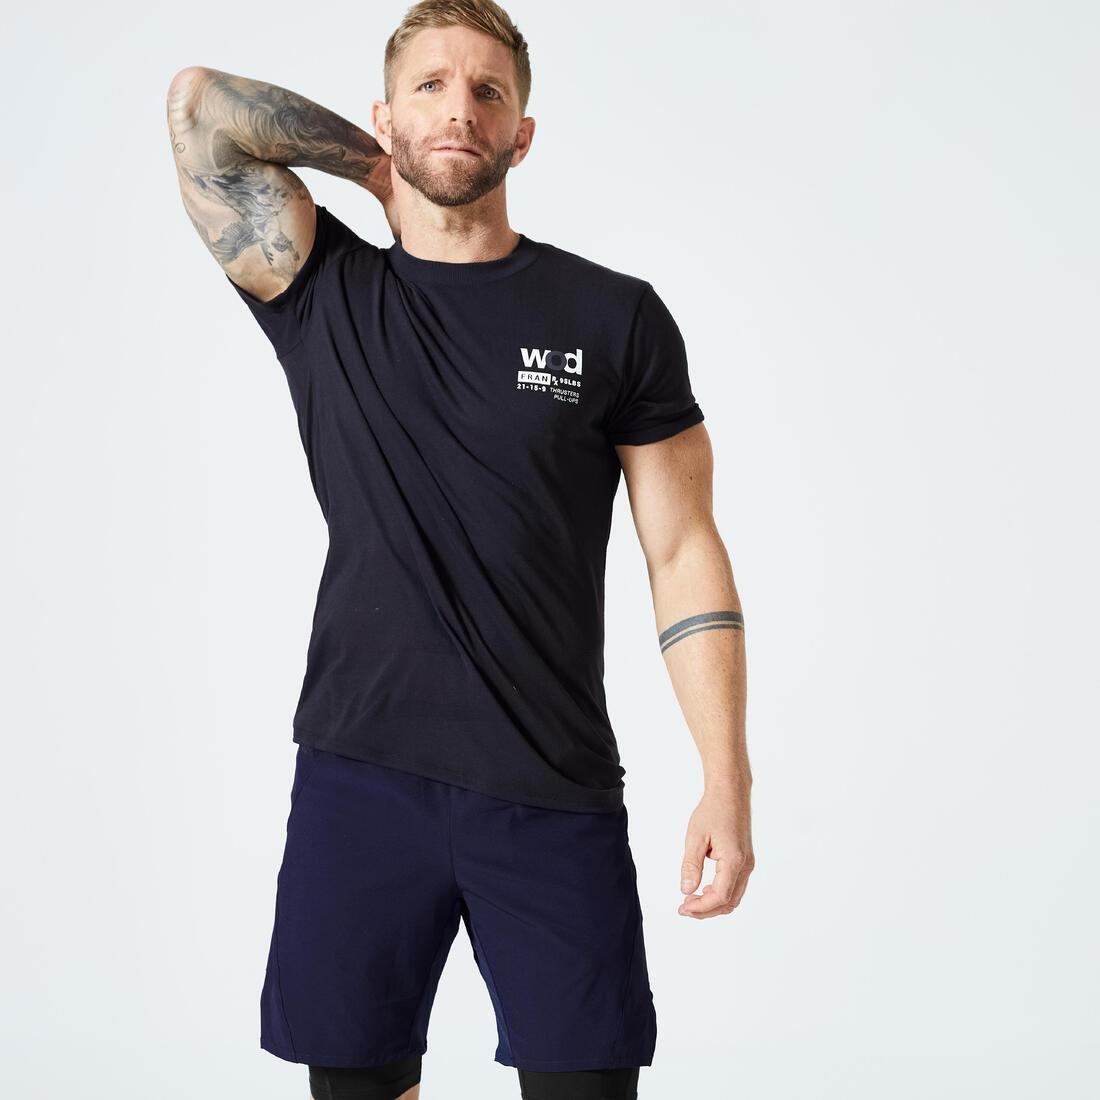 DOMYOS - Men Slim Breathable Cross Training T-Shirt, Khaki